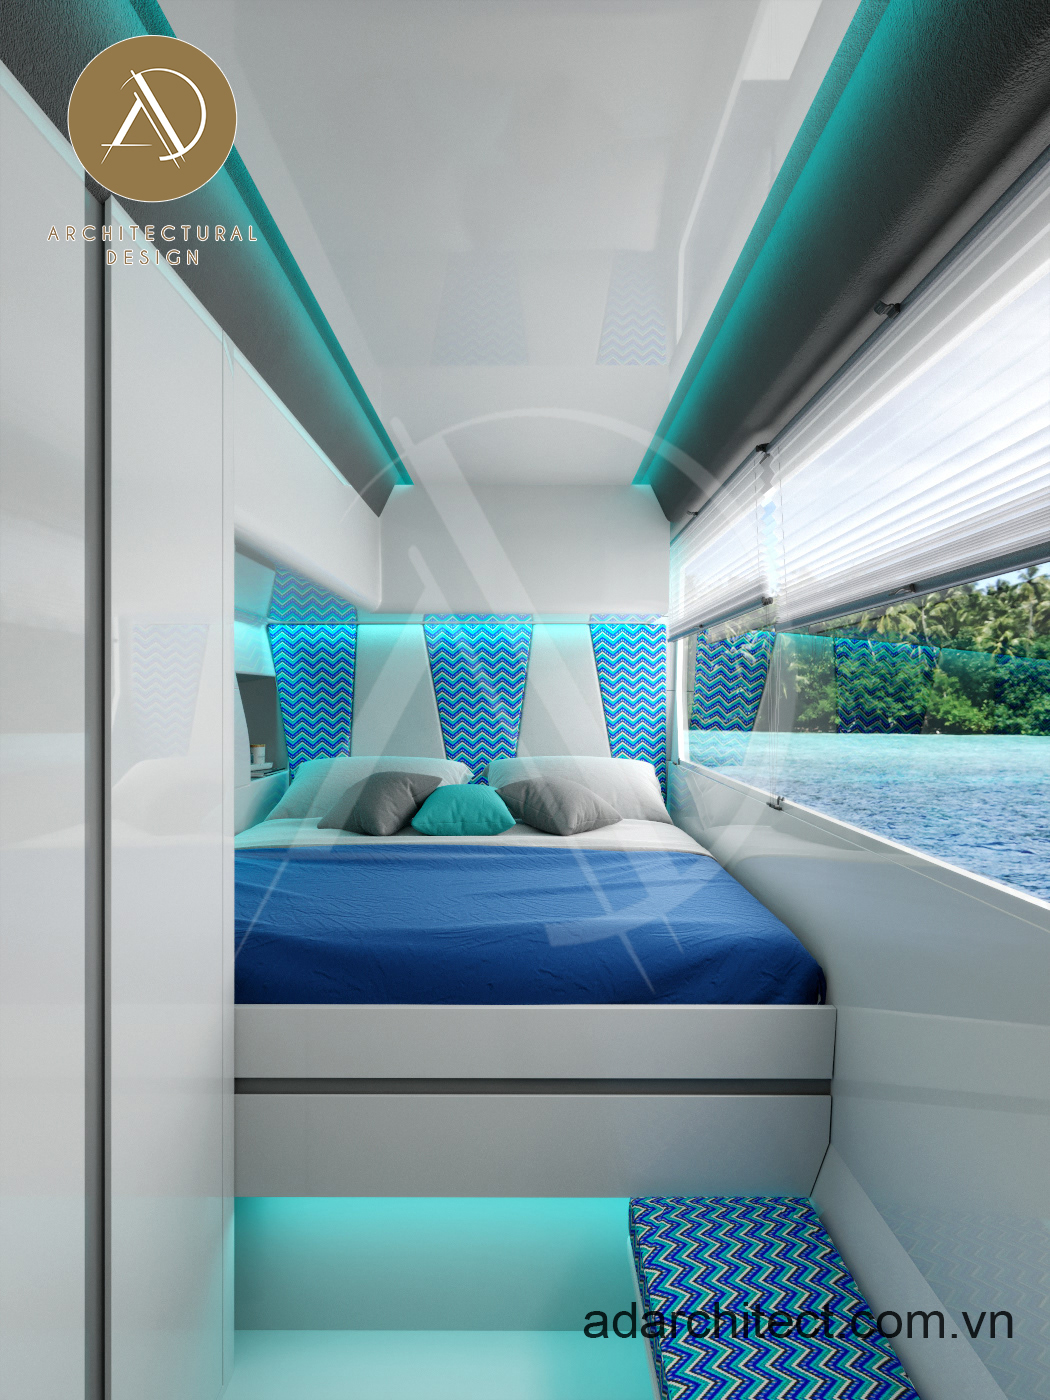 Thiết kế nội thất du thuyền: Sử dụng tông màu nhạt để tạo cảm giác thoáng mát, không gian rộng hơn